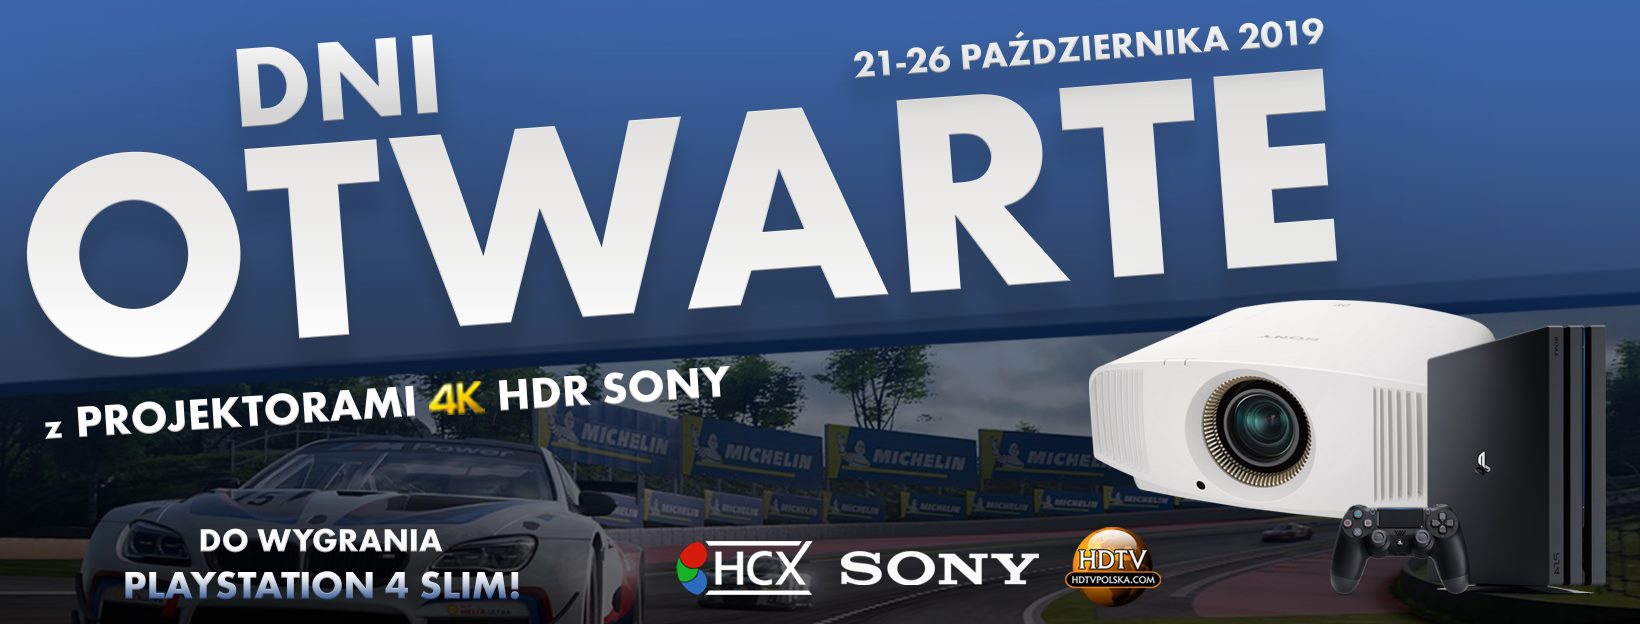 Wygraj konsolę PS4: Dni Otwarte z projektorami Sony w Warszawie